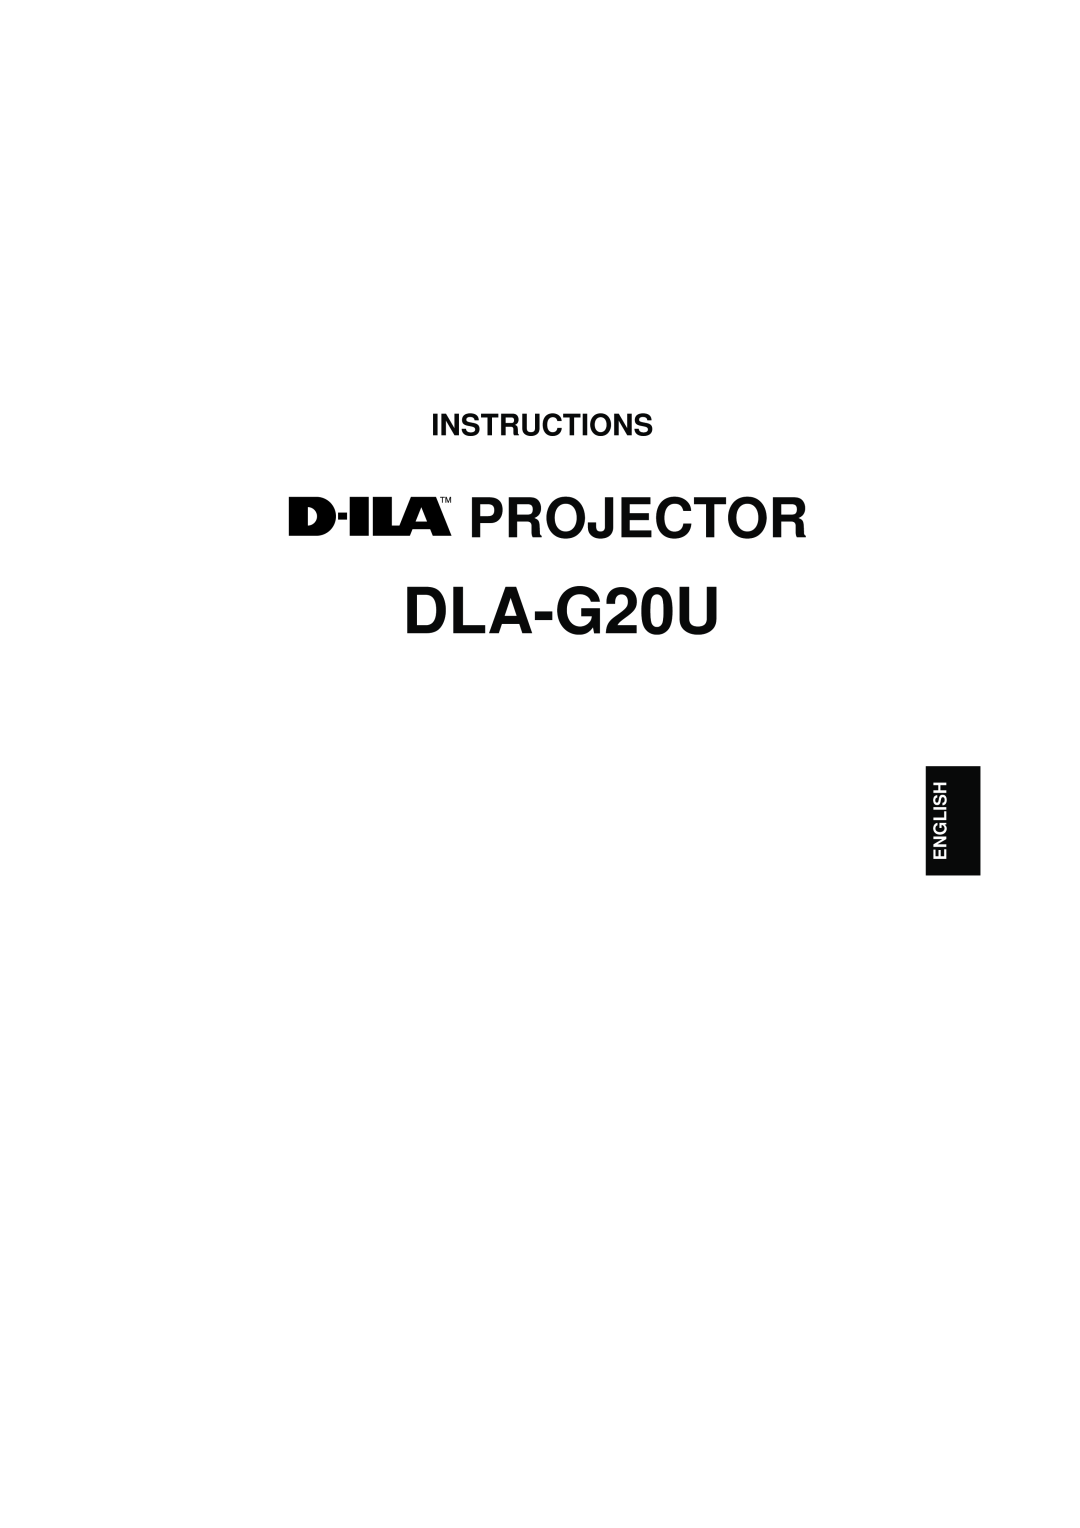 JVC DLA-G20U manual Projector, Instructions, English 